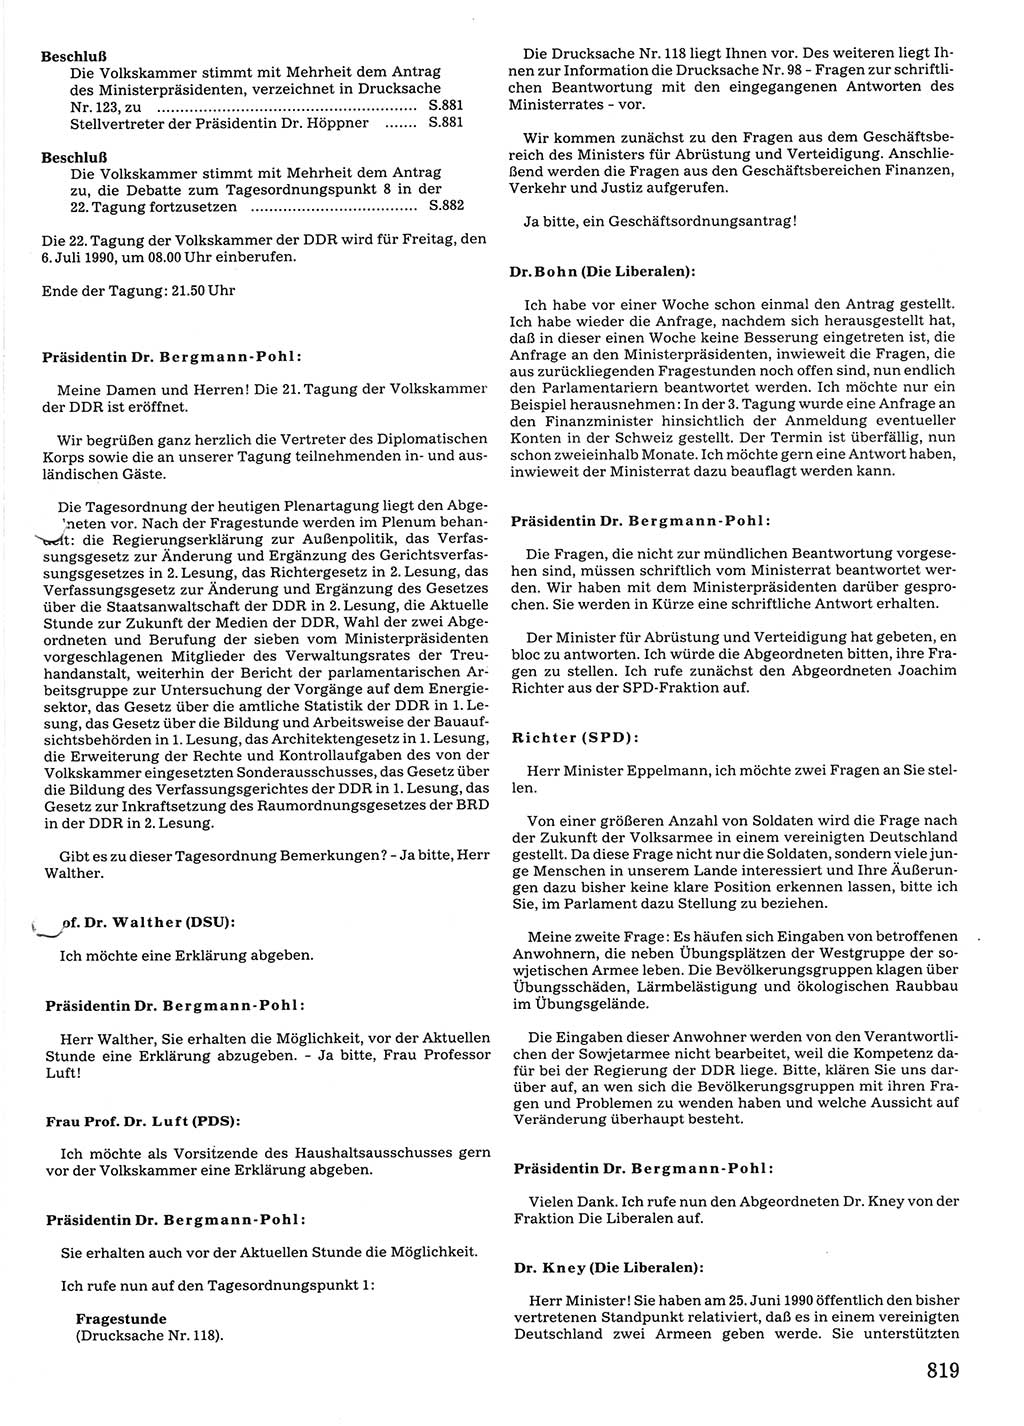 Tagungen der Volkskammer (VK) der Deutschen Demokratischen Republik (DDR), 10. Wahlperiode 1990, Seite 819 (VK. DDR 10. WP. 1990, Prot. Tg. 1-38, 5.4.-2.10.1990, S. 819)